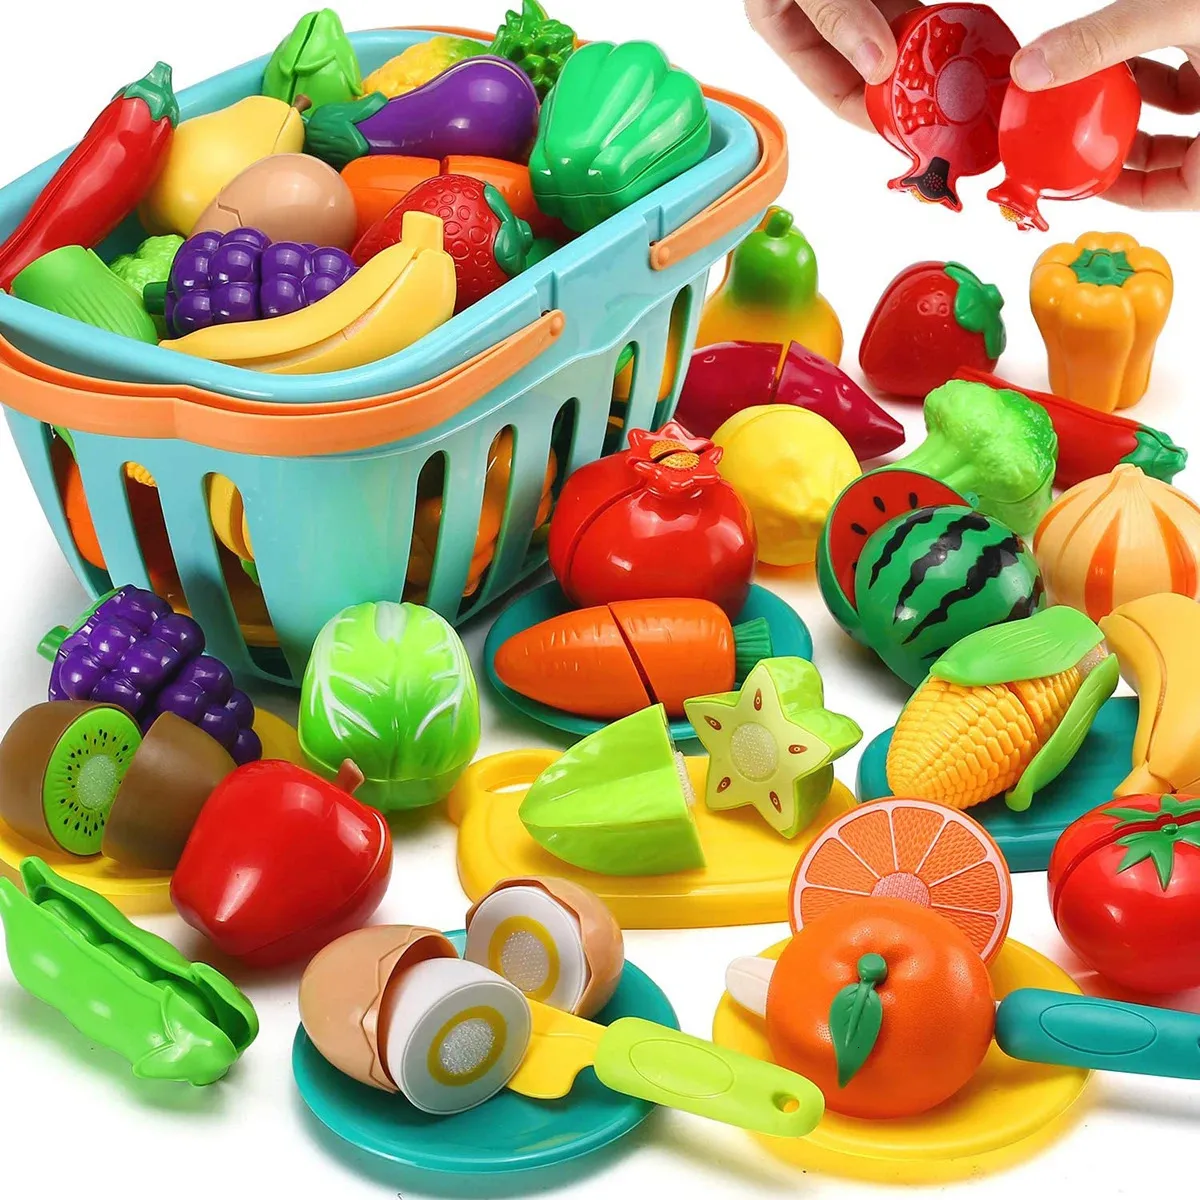 Enfants semblant jouer cuisine jouet ensemble coupe fruits légumes nourriture jouer maison Simulation jouets éducation précoce filles garçons cadeaux 240229